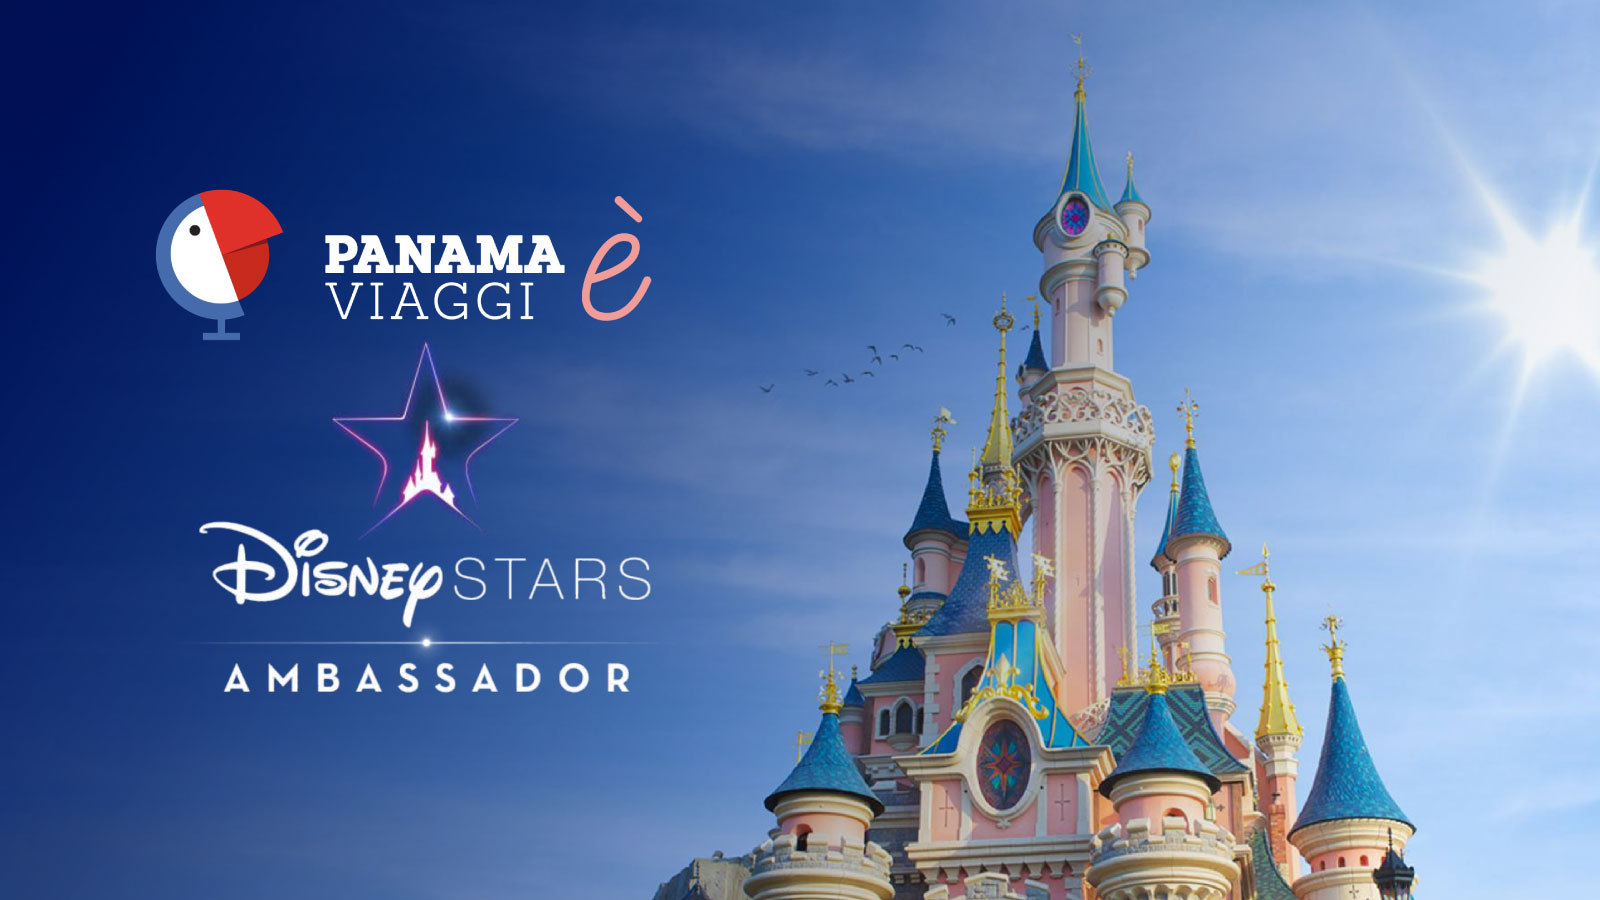 Panama è Disney Star Ambassador